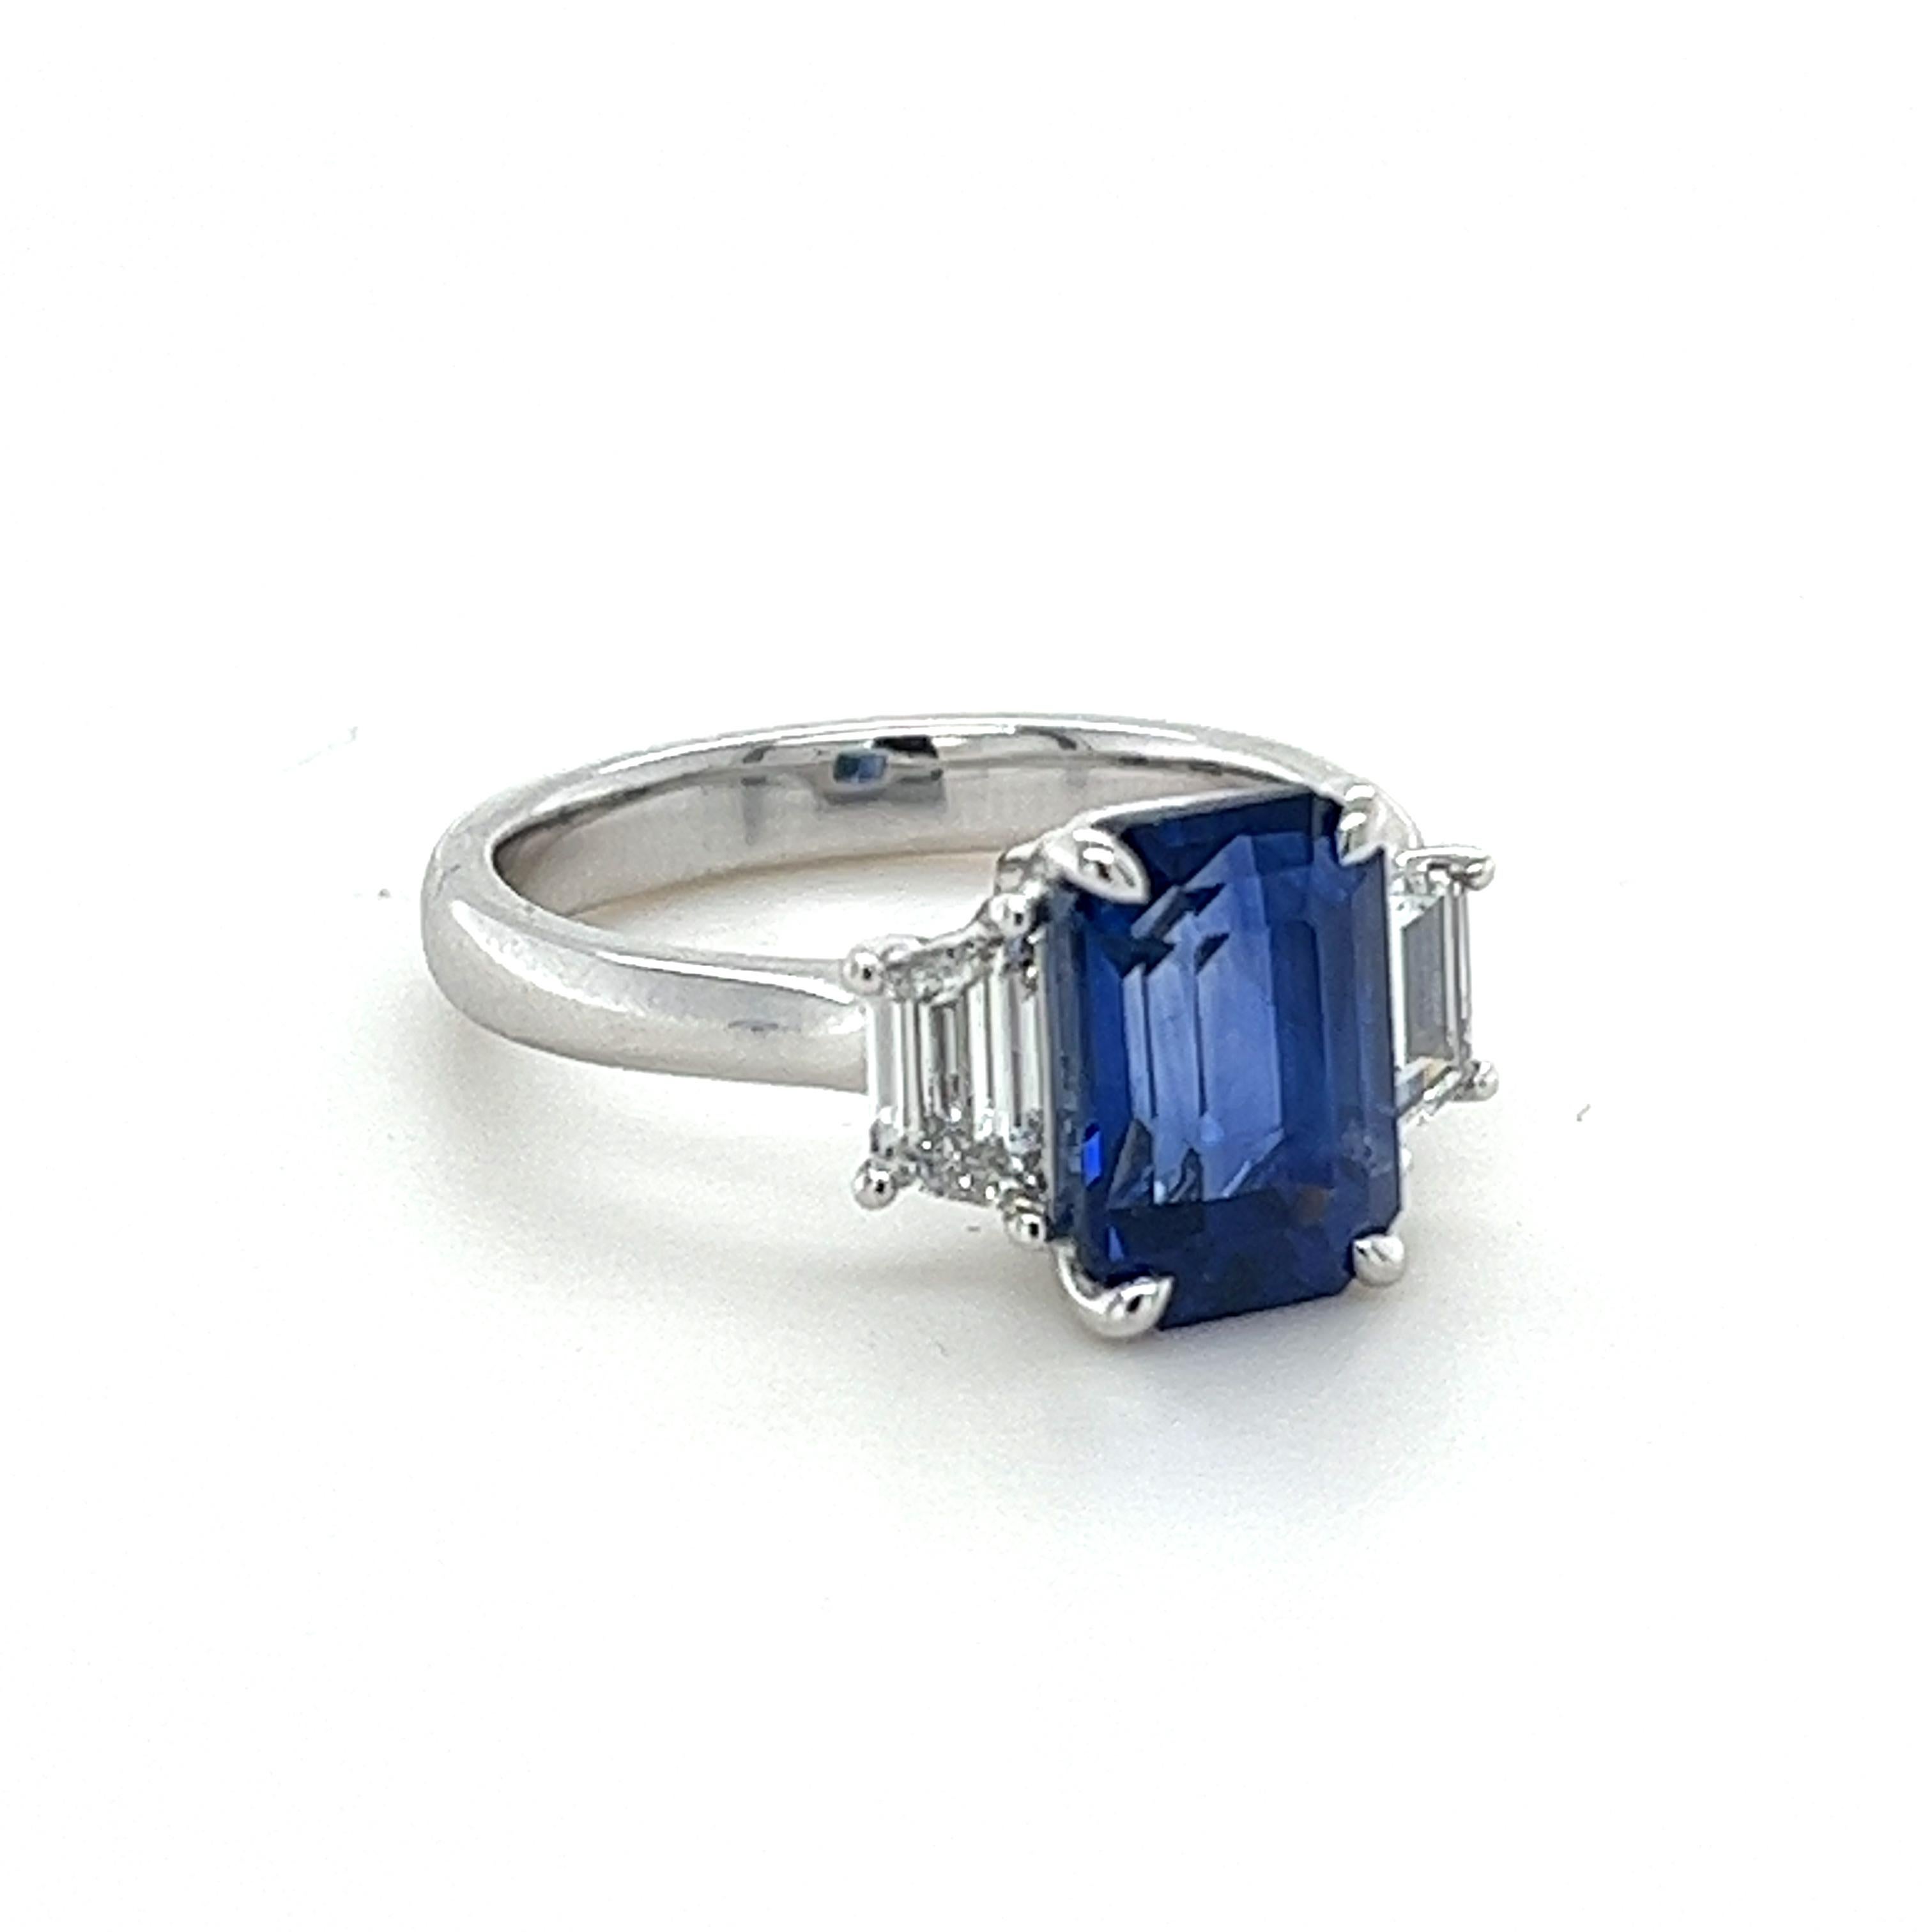 GIA-zertifizierter Ceylon-Saphir im Smaragdschliff mit einem Gewicht von 3,82 Karat
Abmessungen (9,98x6,82x5,44) mm
Diamanten mit einem Gewicht von 0,68 Karat
Diamanten sind F-VS
In Platin gefasster Ring
7.63 Gramm